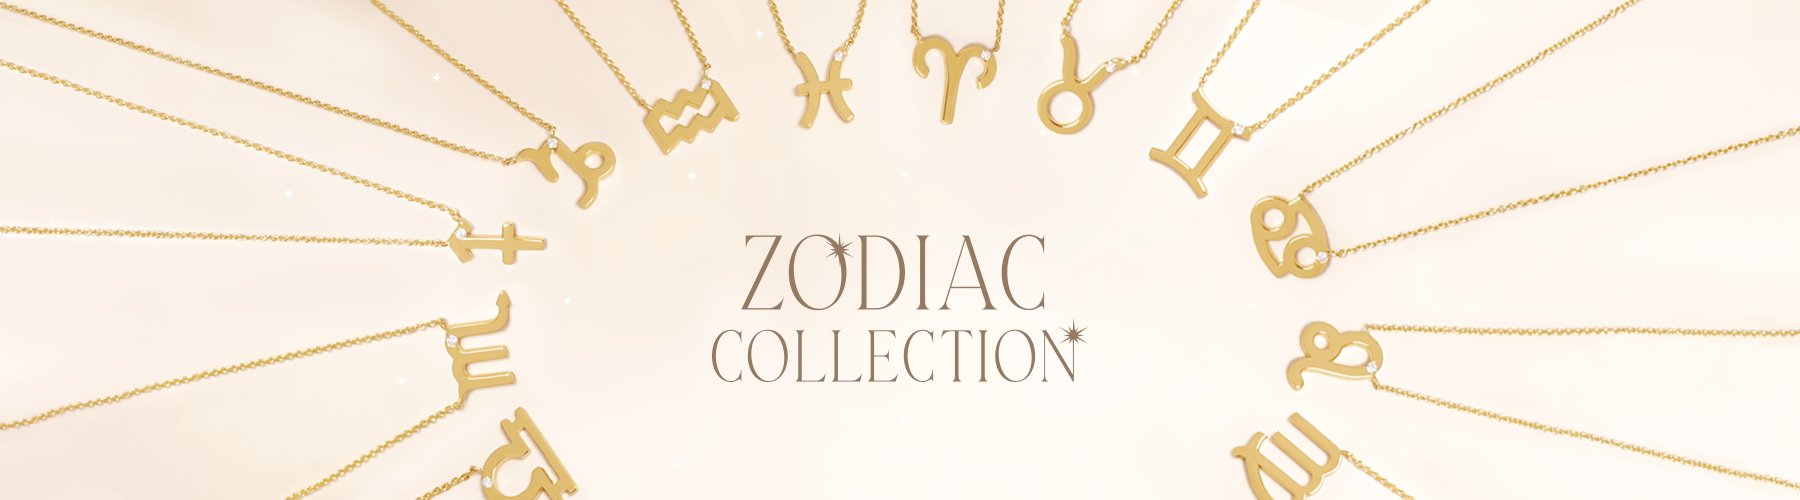 Colección Zodiac collection 